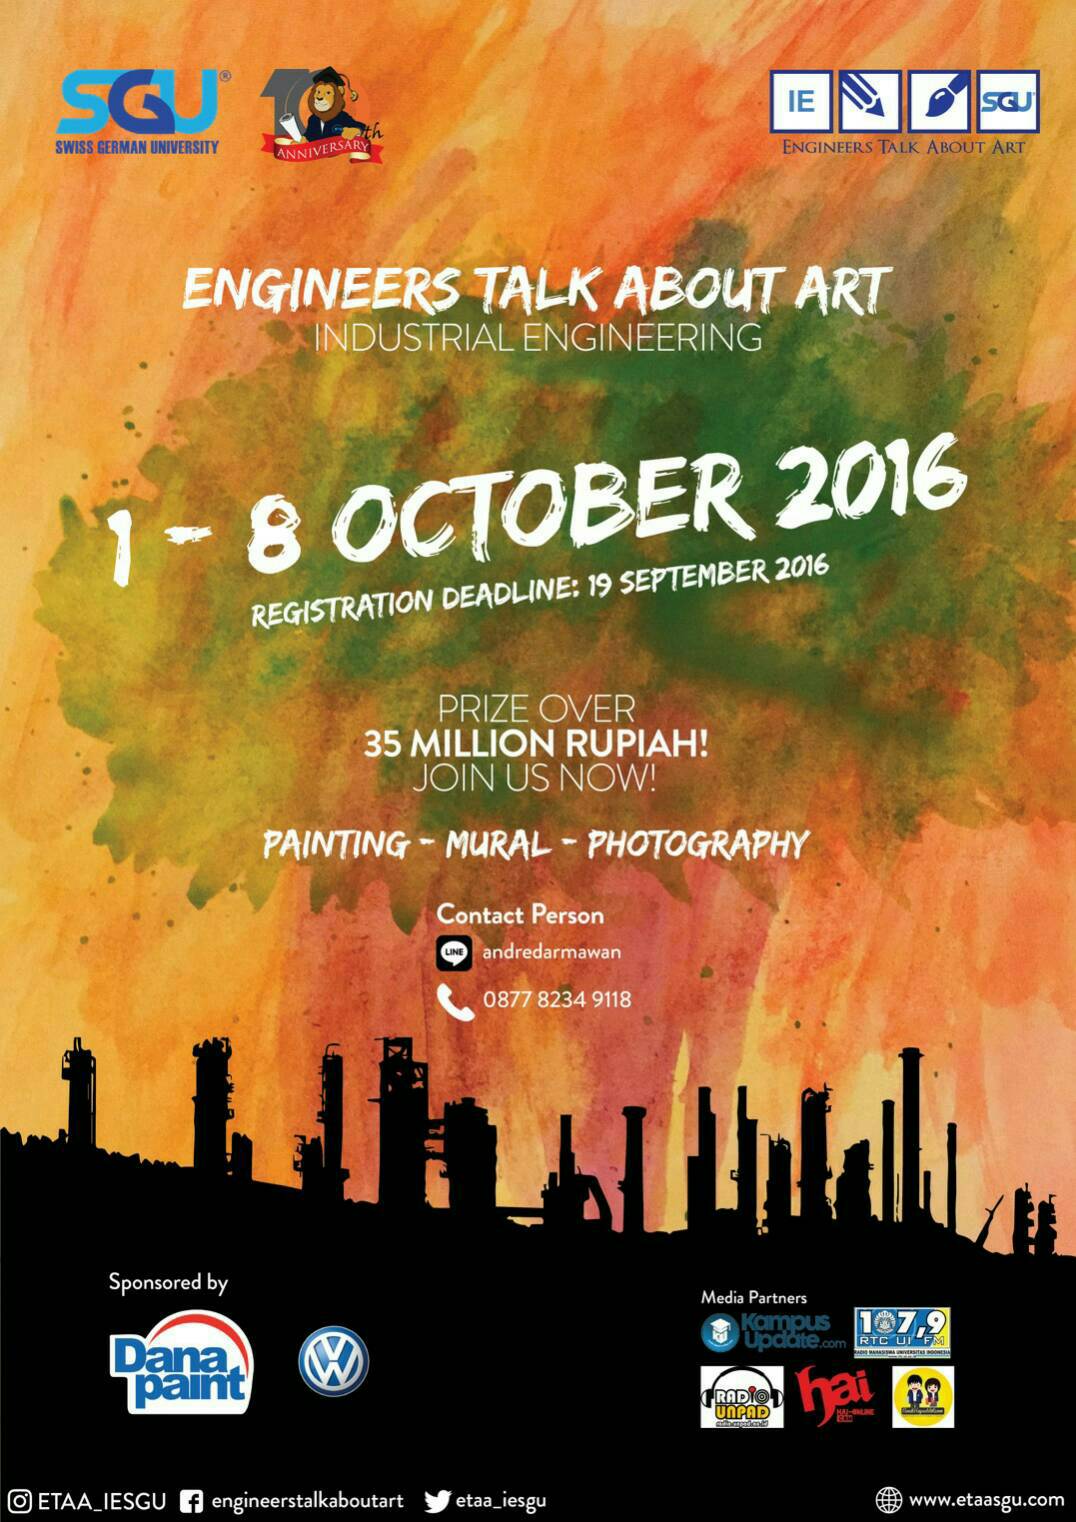 Engineers Talk About Art (ETAA) by SGU Industrial Engineering Study Program